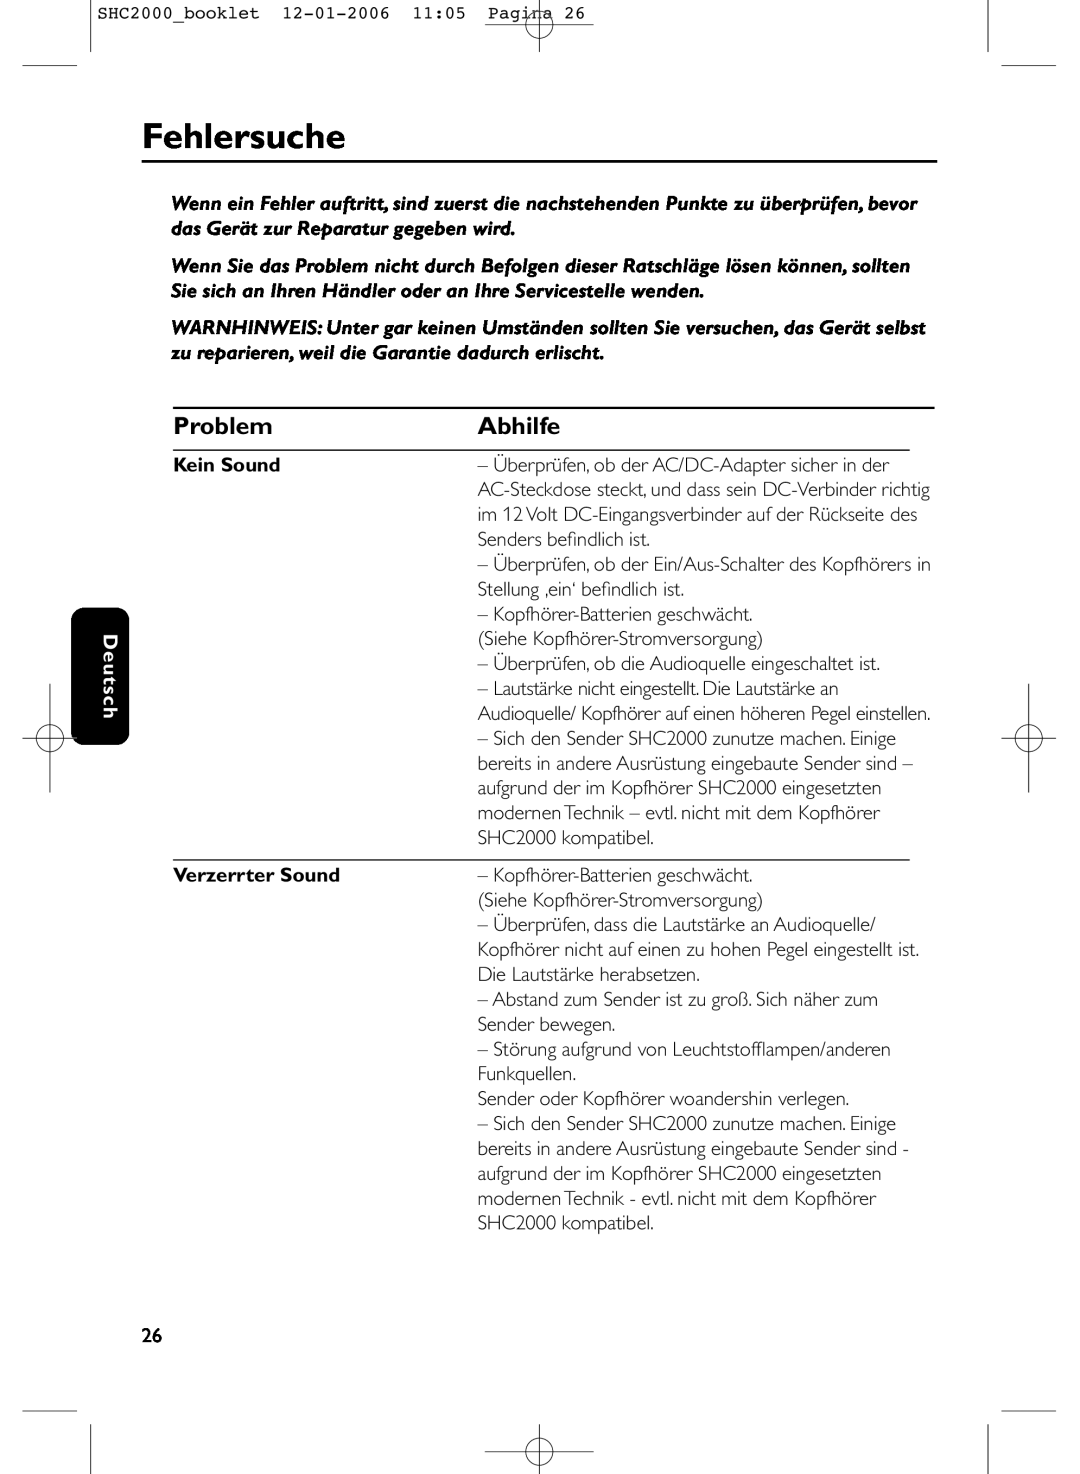 Philips SHC2000 manual Fehlersuche, Abhilfe, Problem, Deutsch, Kein Sound, Verzerrter Sound 